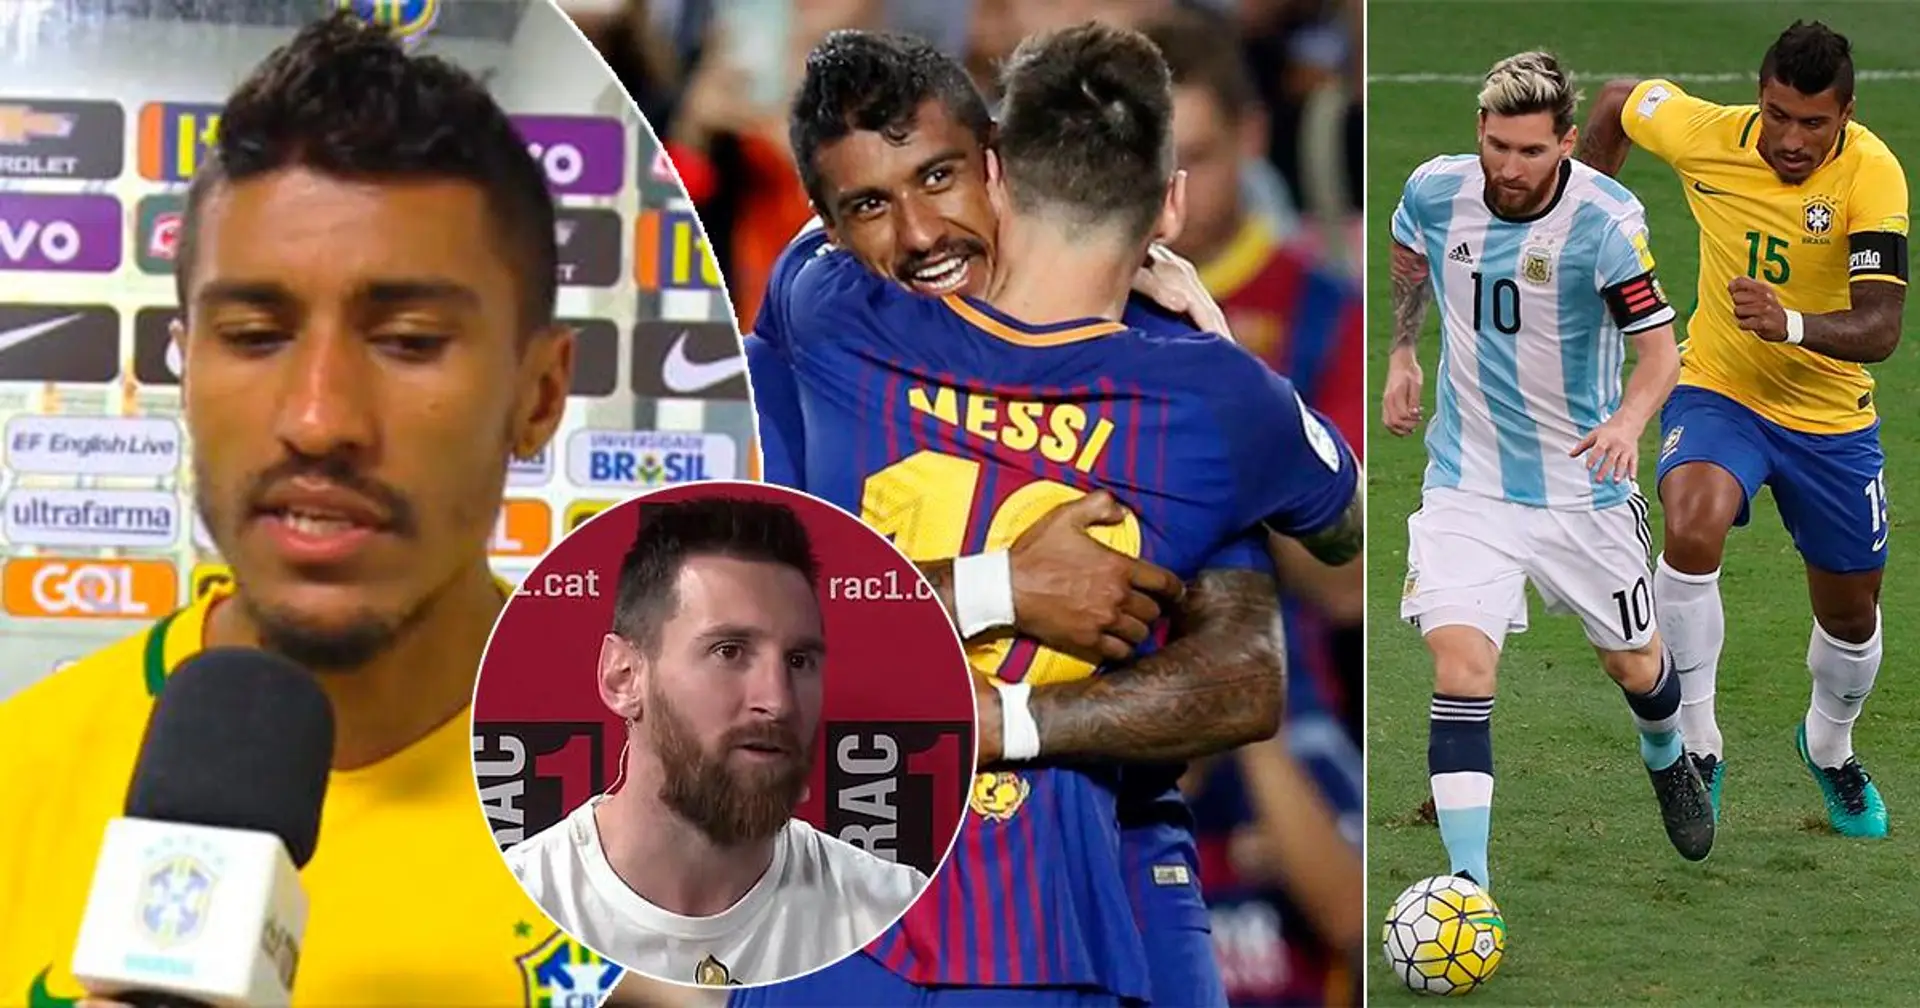 "J'ai failli tomber à plat ventre'': comment Messi a influencé Paulinho de signer à Barcelone